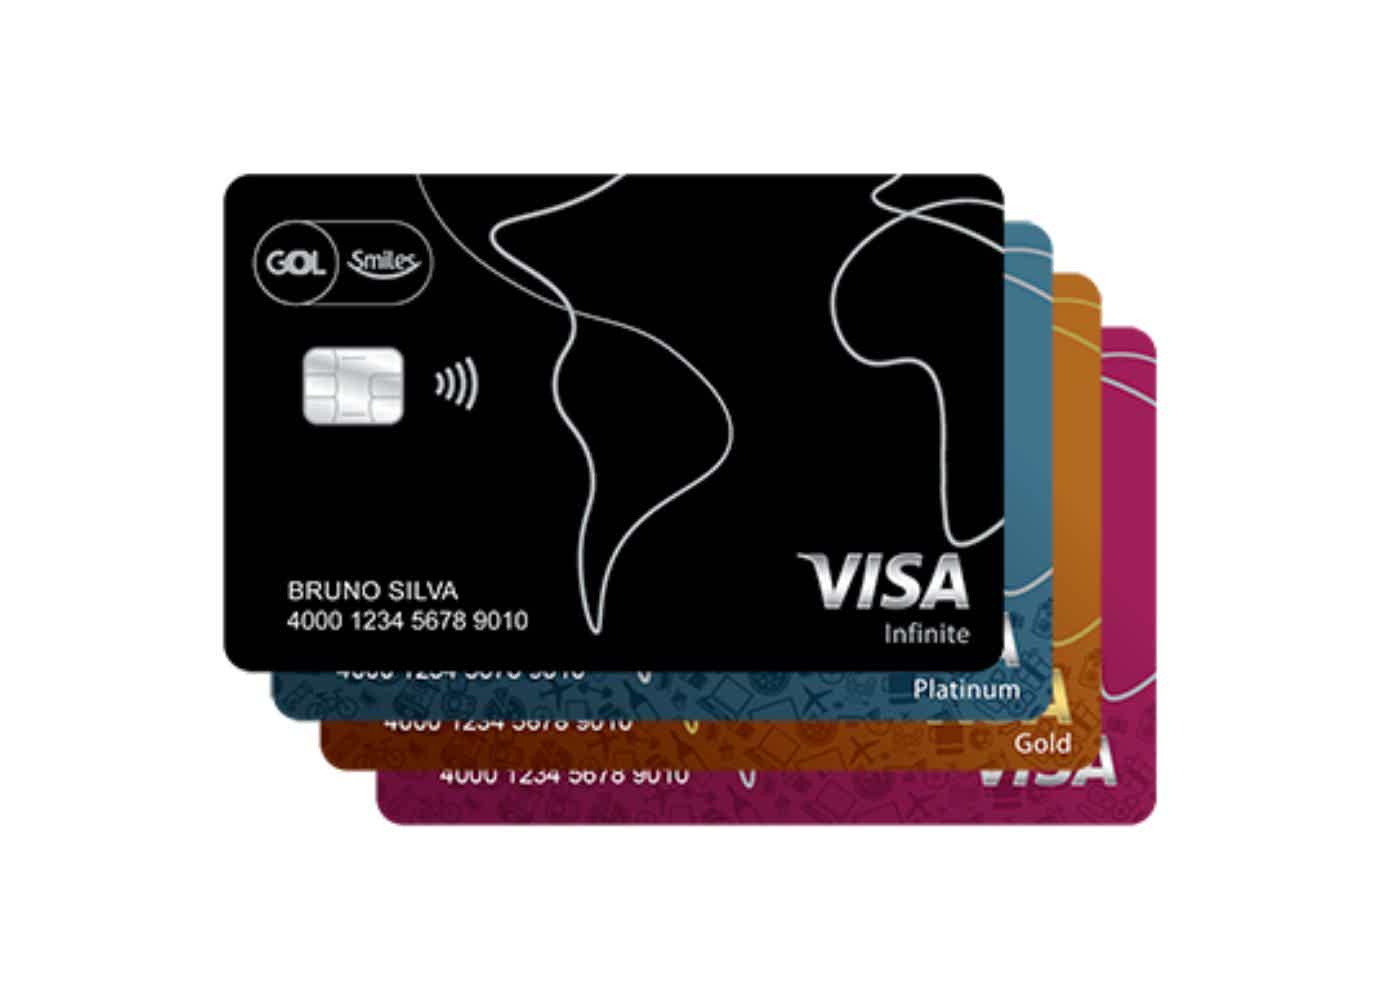 Quatro cartões de crédito Gol Smiles nas cores preto, azul, cobre e rosa